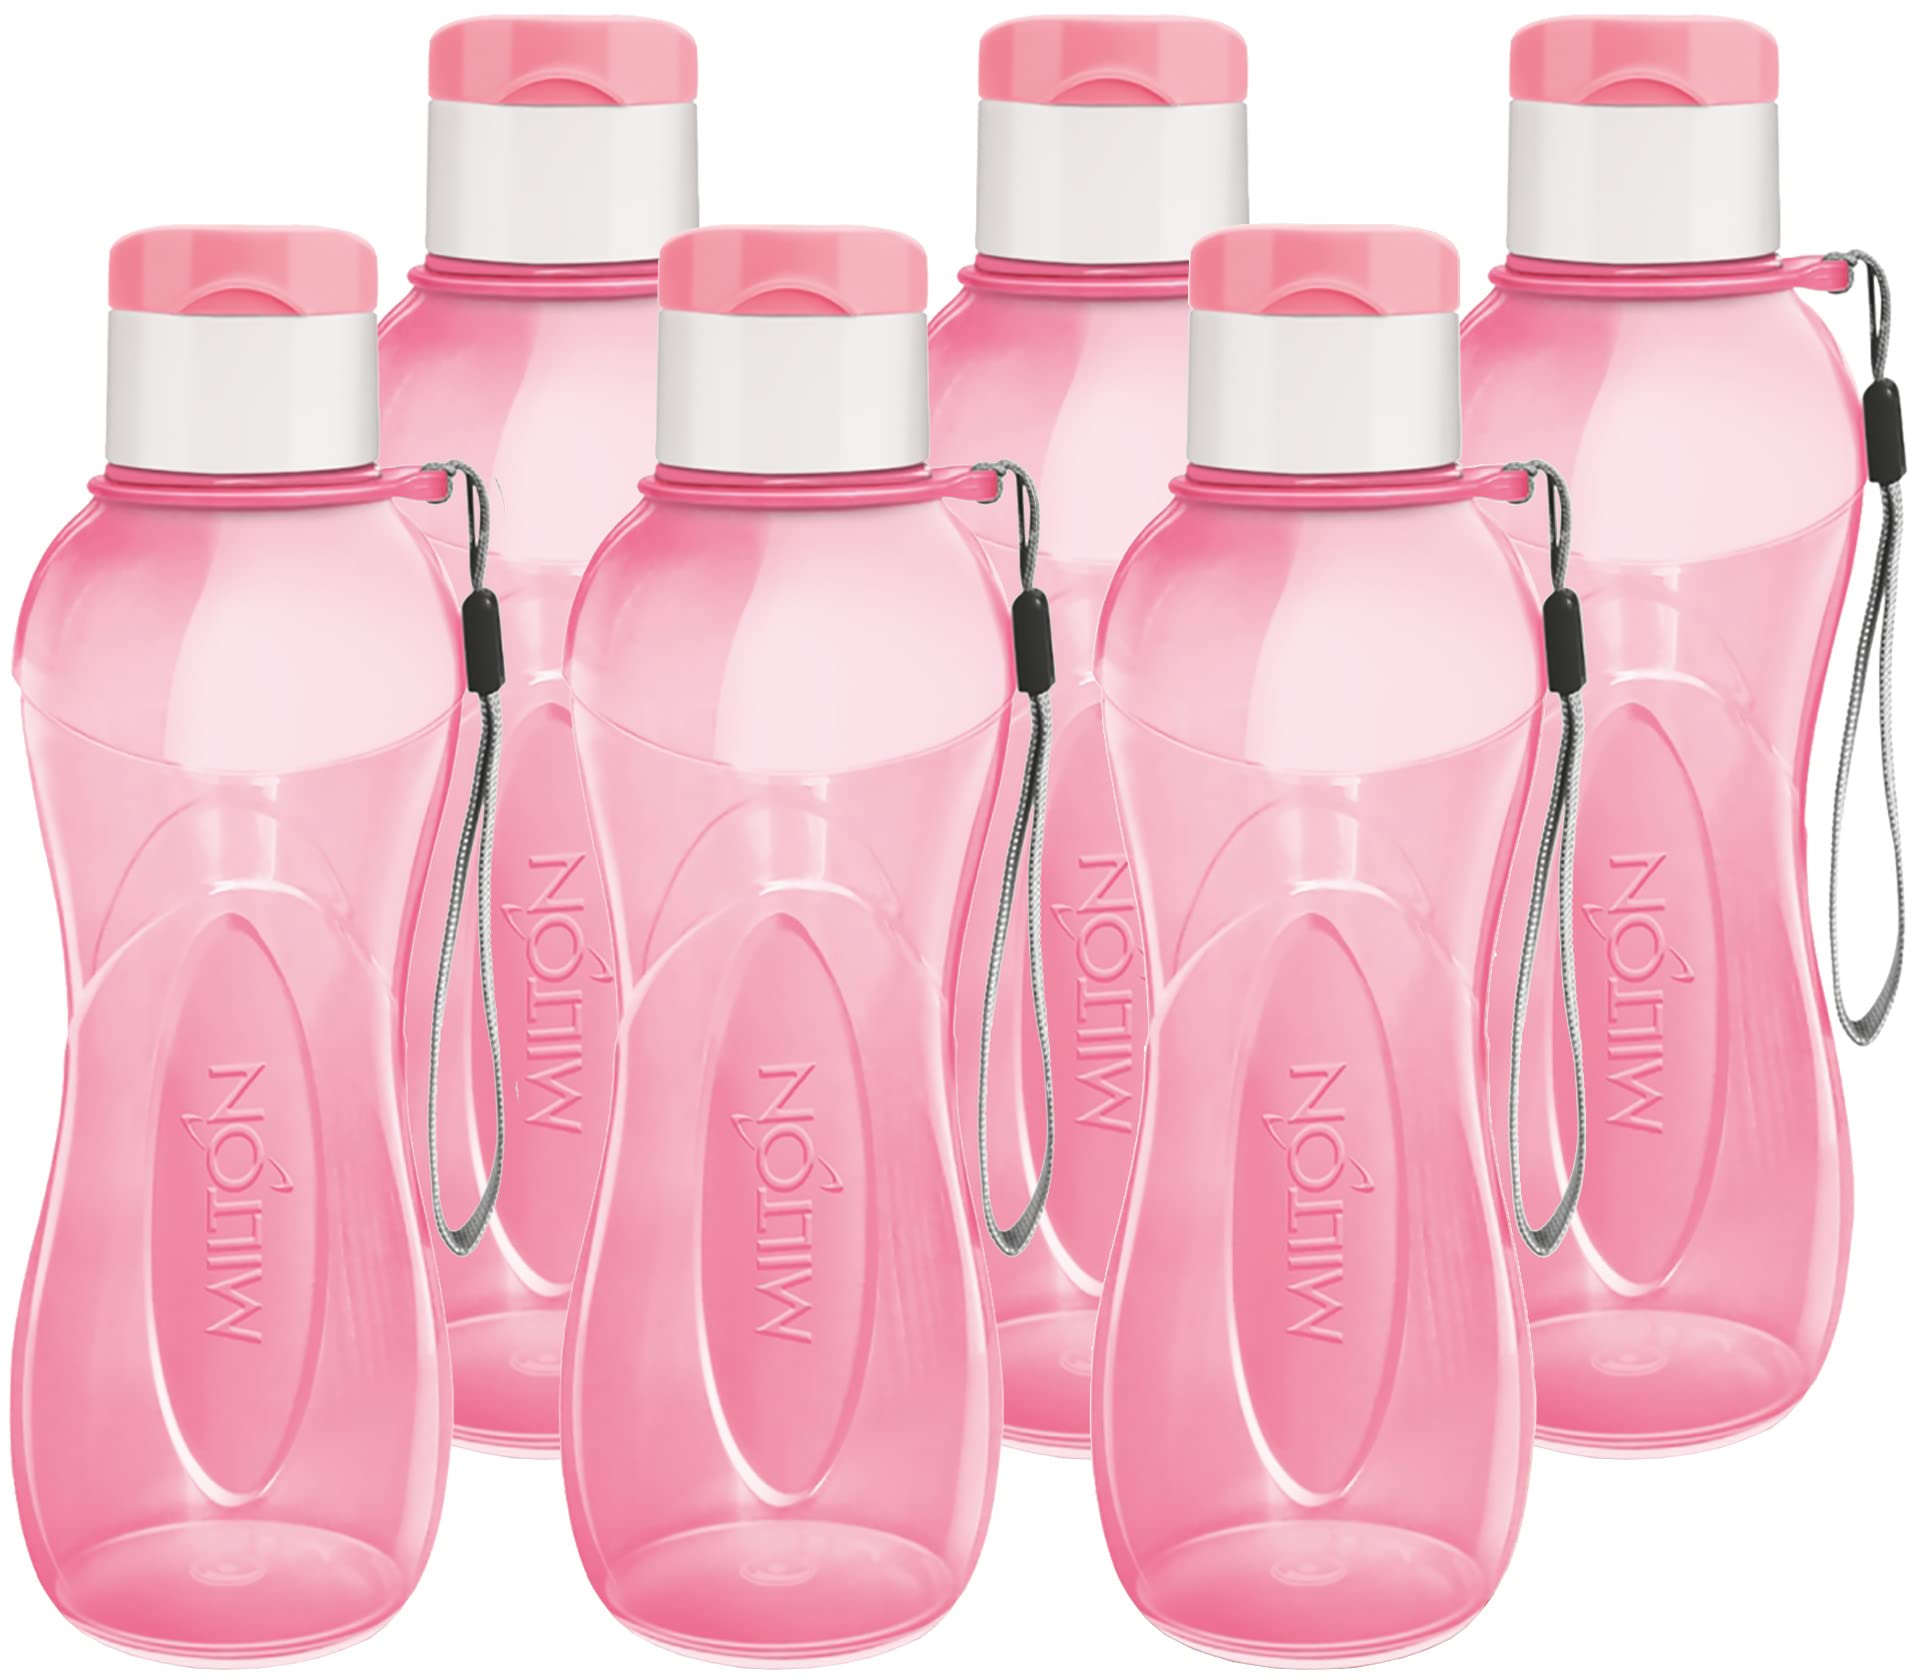 Milton MILTON Water Bottle Kids Reusable Leakproof 12 Oz Plastic